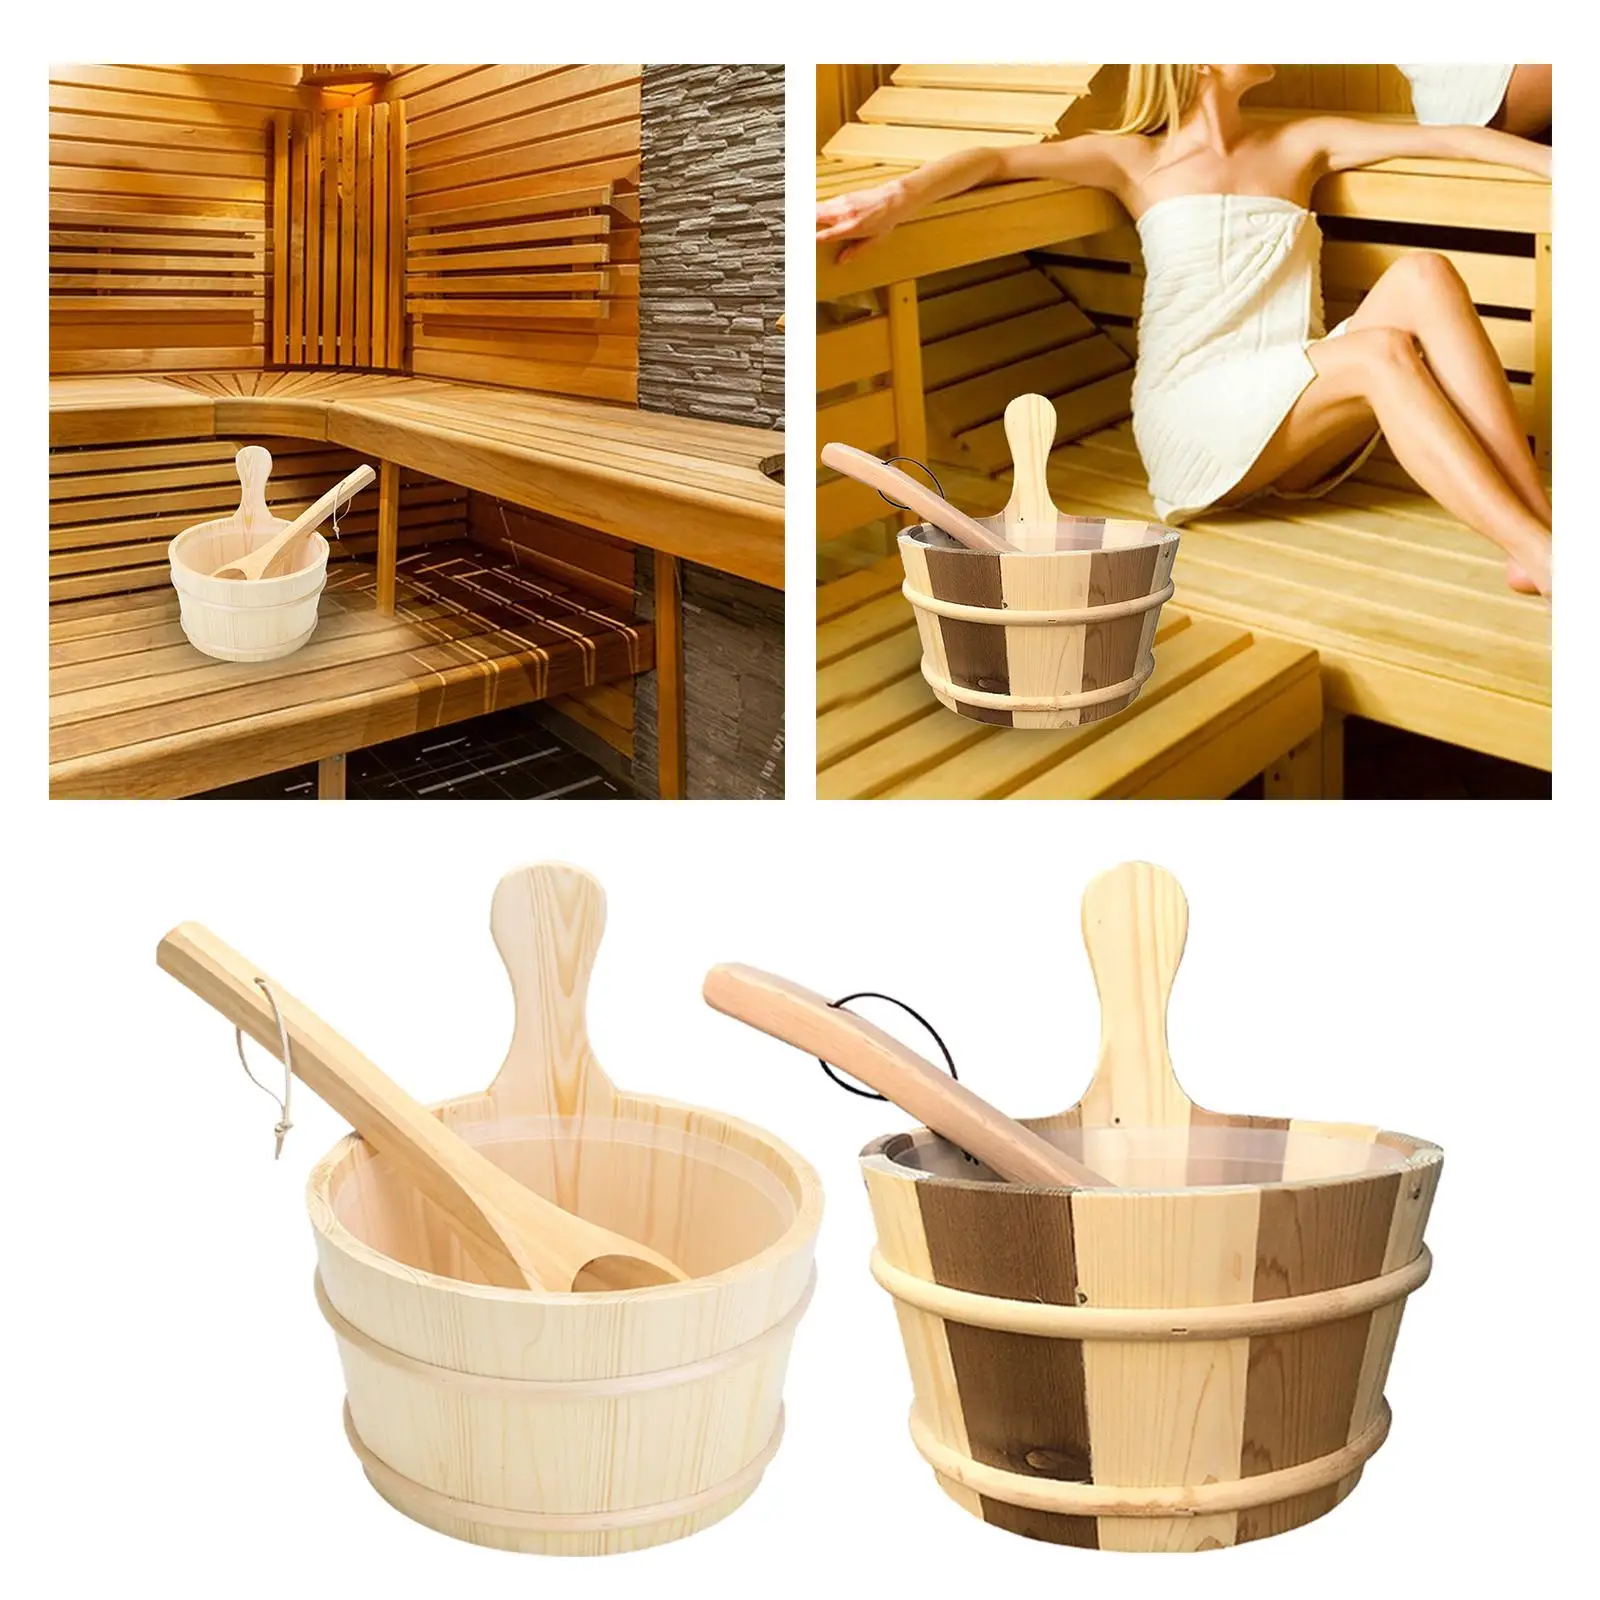 4L Wooden Sauna Barrel Large Capacity Bath Accessories for Sauna